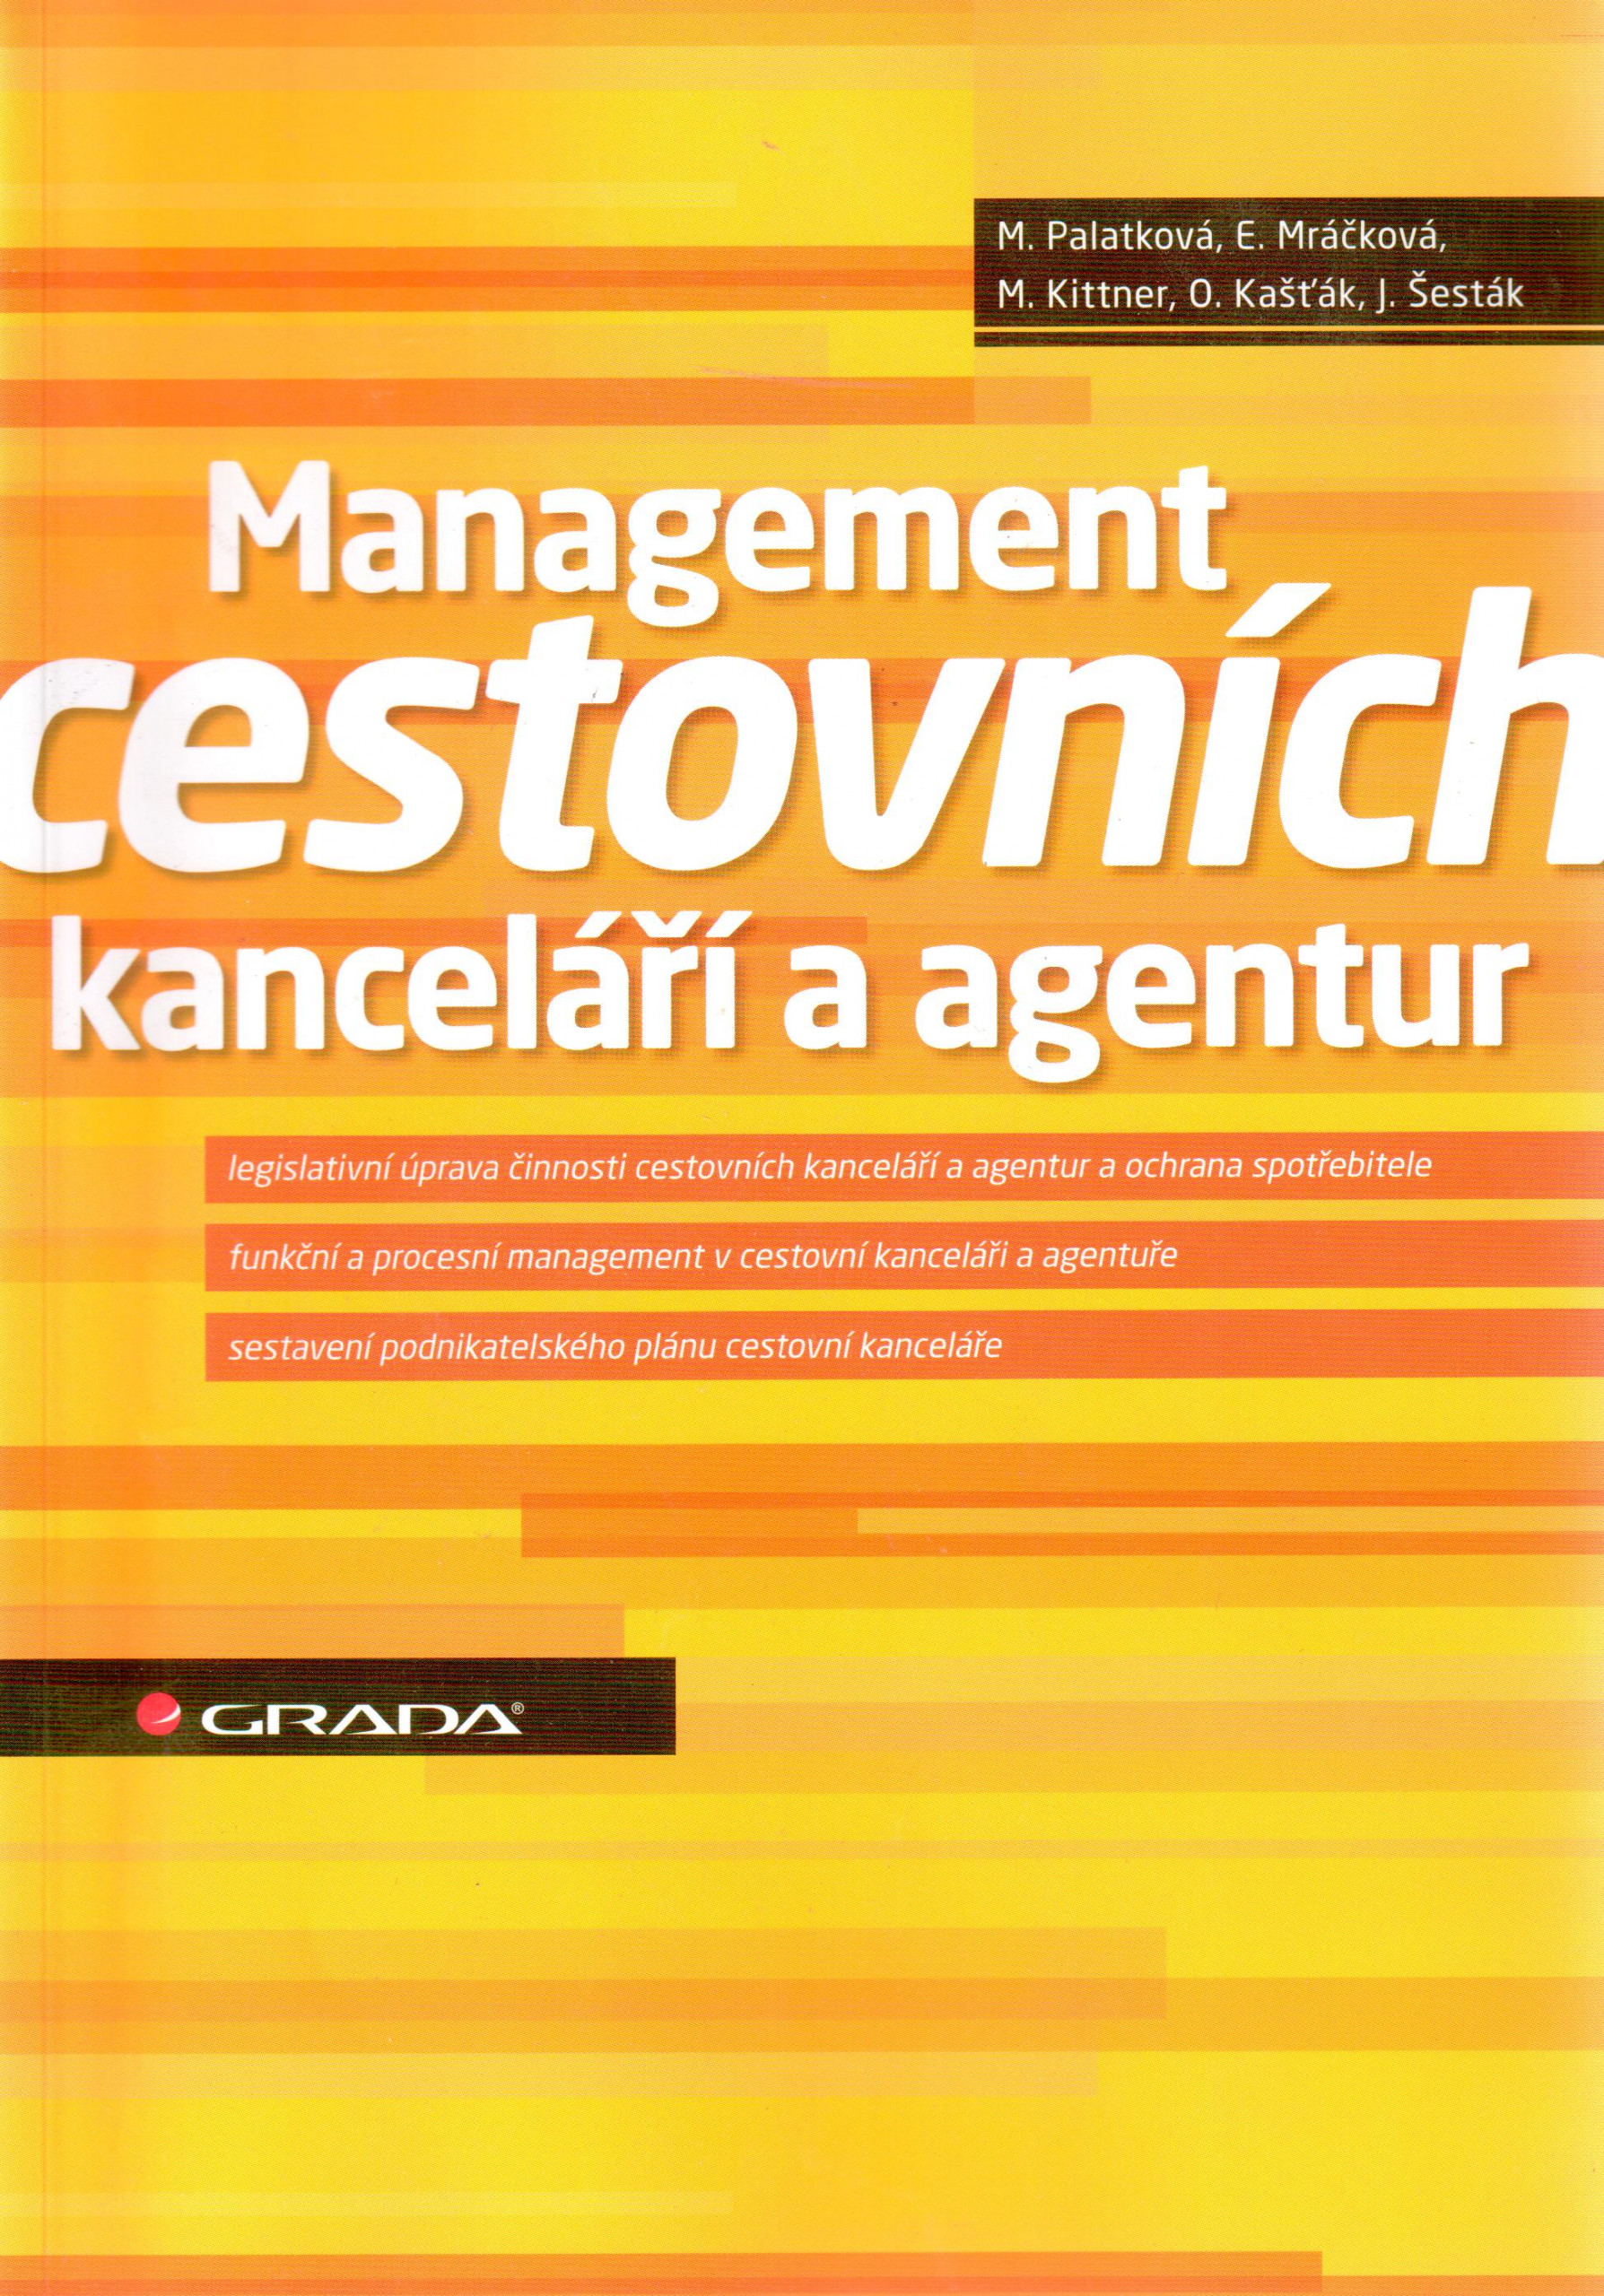 Management cestovních kanceláří a agentur - Náhled učebnice